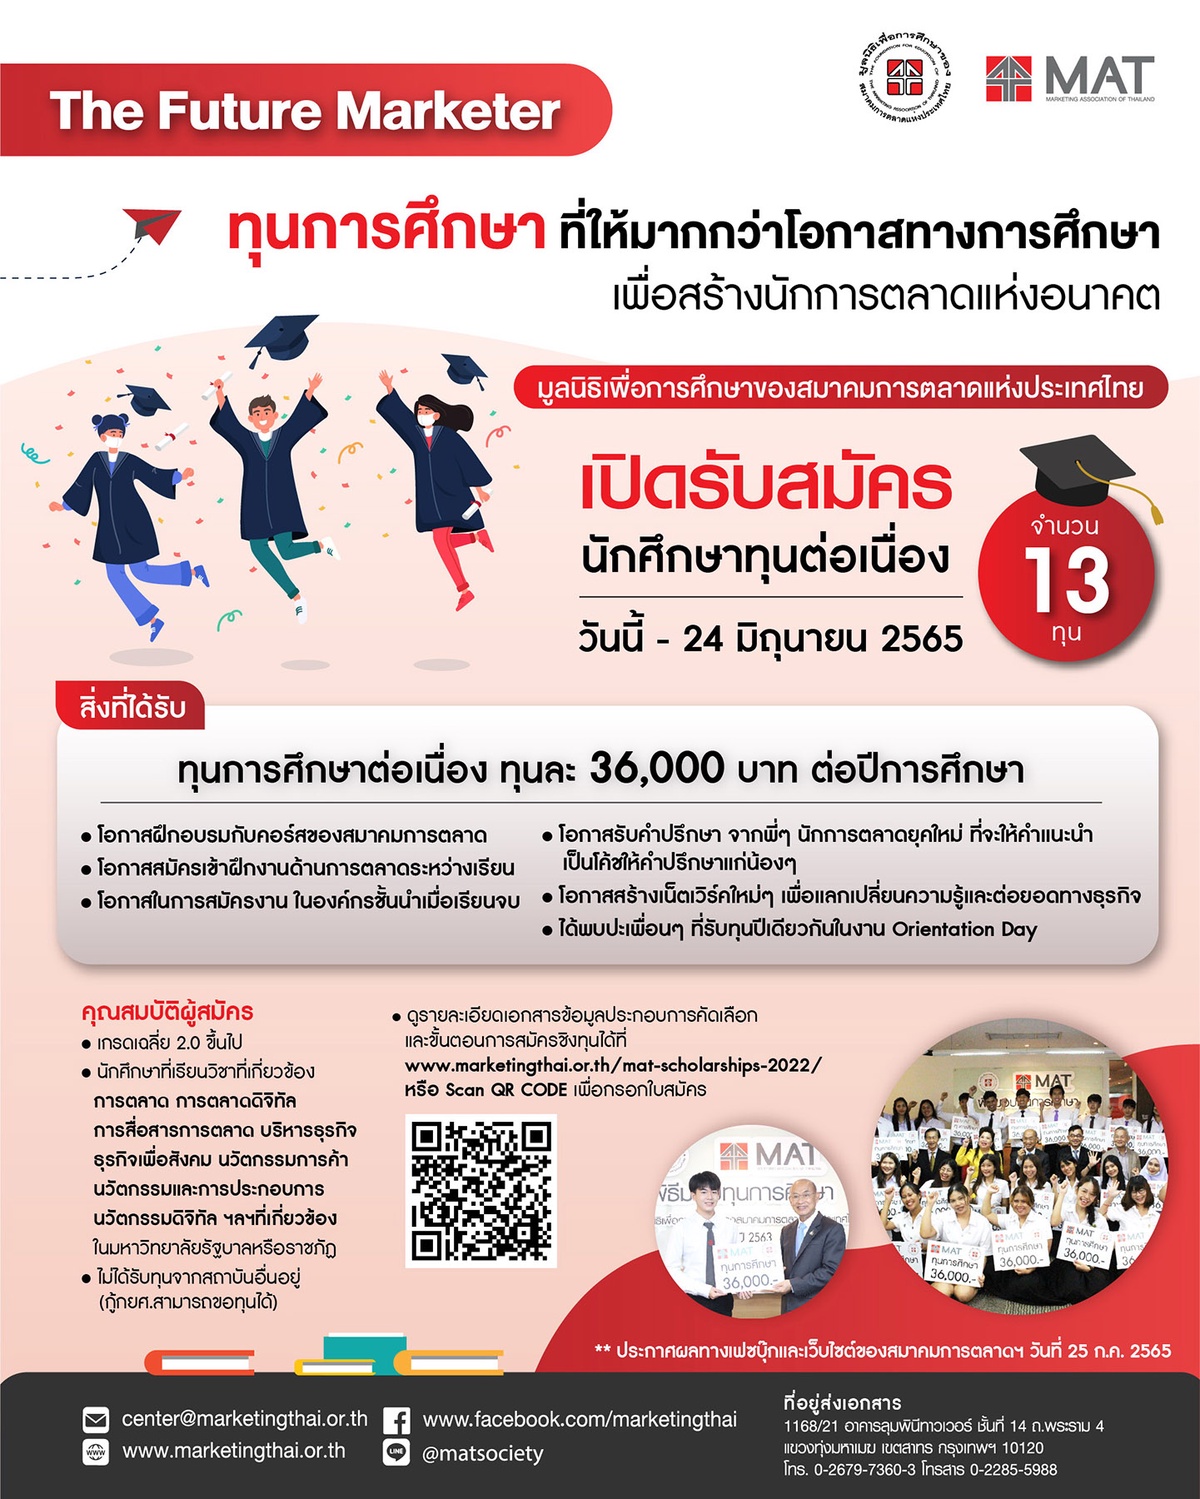 มูลนิธิเพื่อการศึกษาของสมาคมการตลาดแห่งประเทศไทย เปิดรับสมัครนักศึกษาทุน The Future Marketer